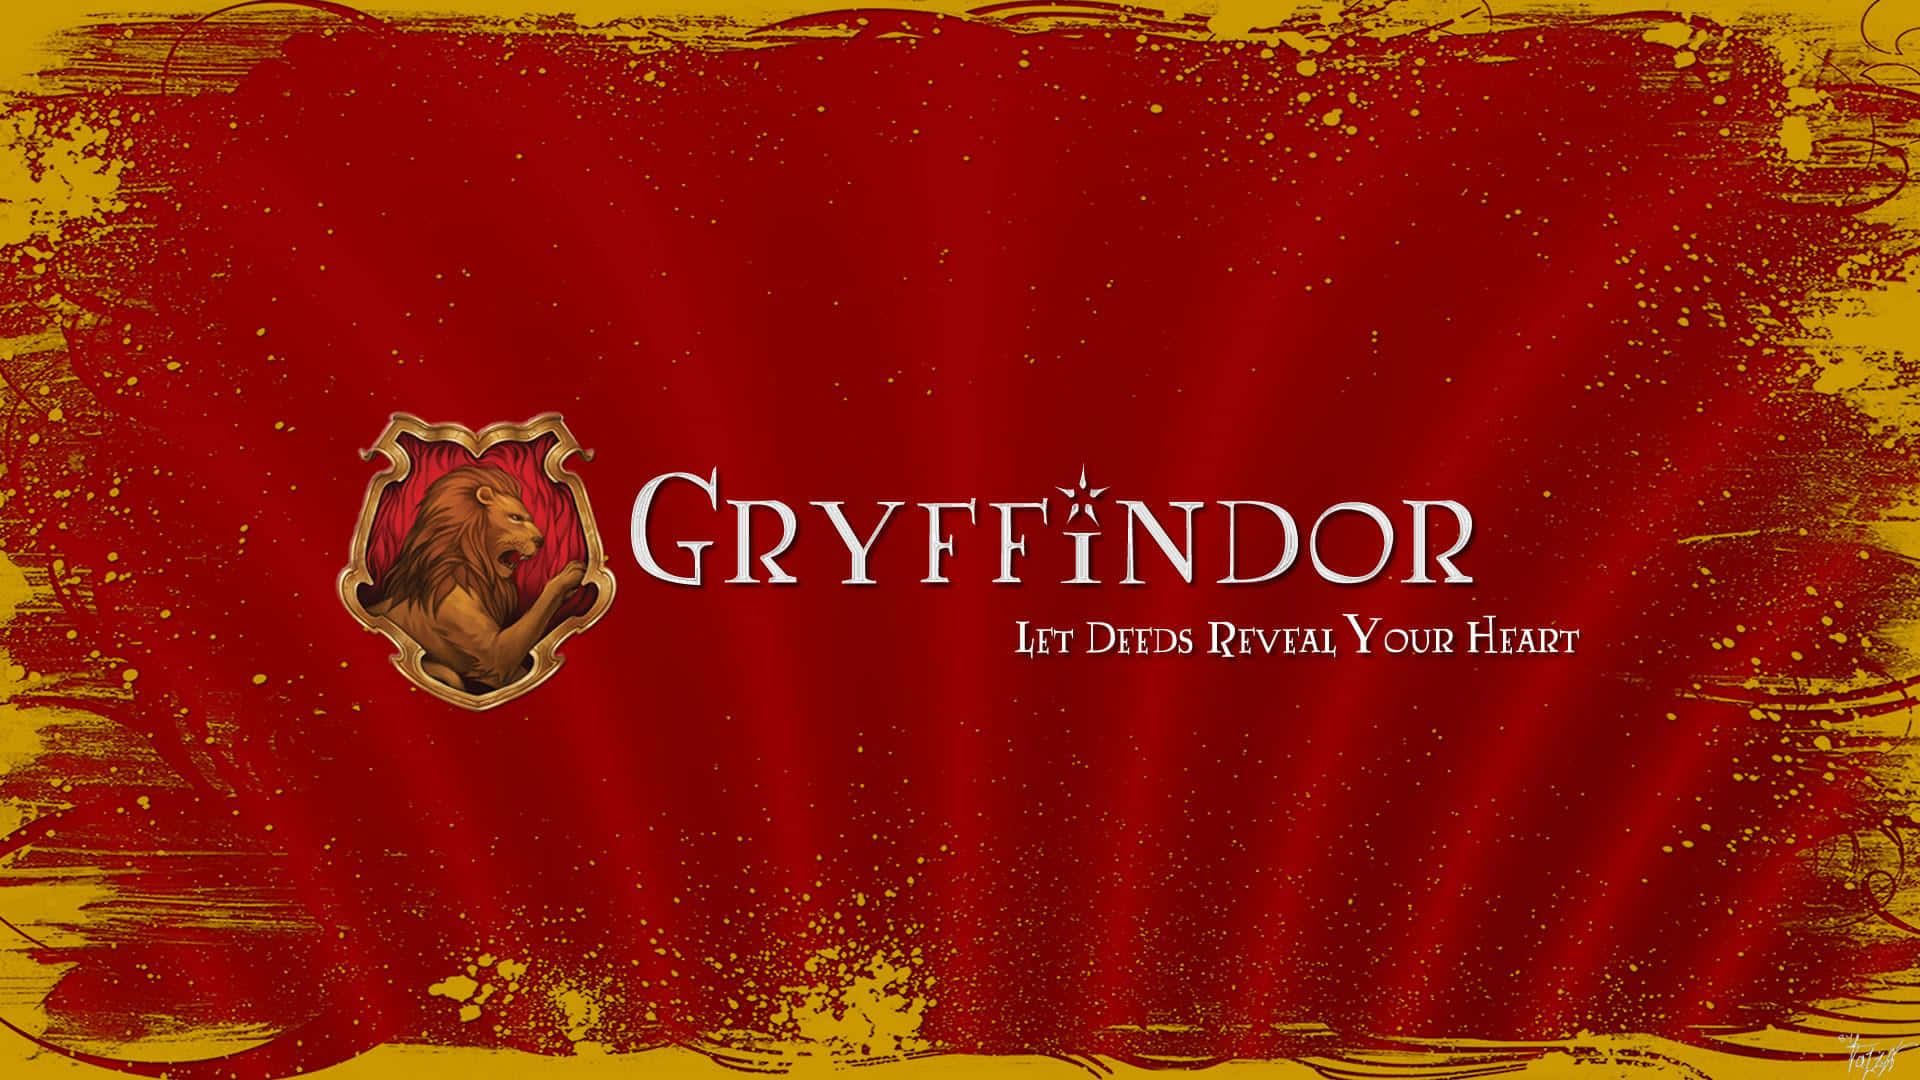 Gryffindorsstolthet